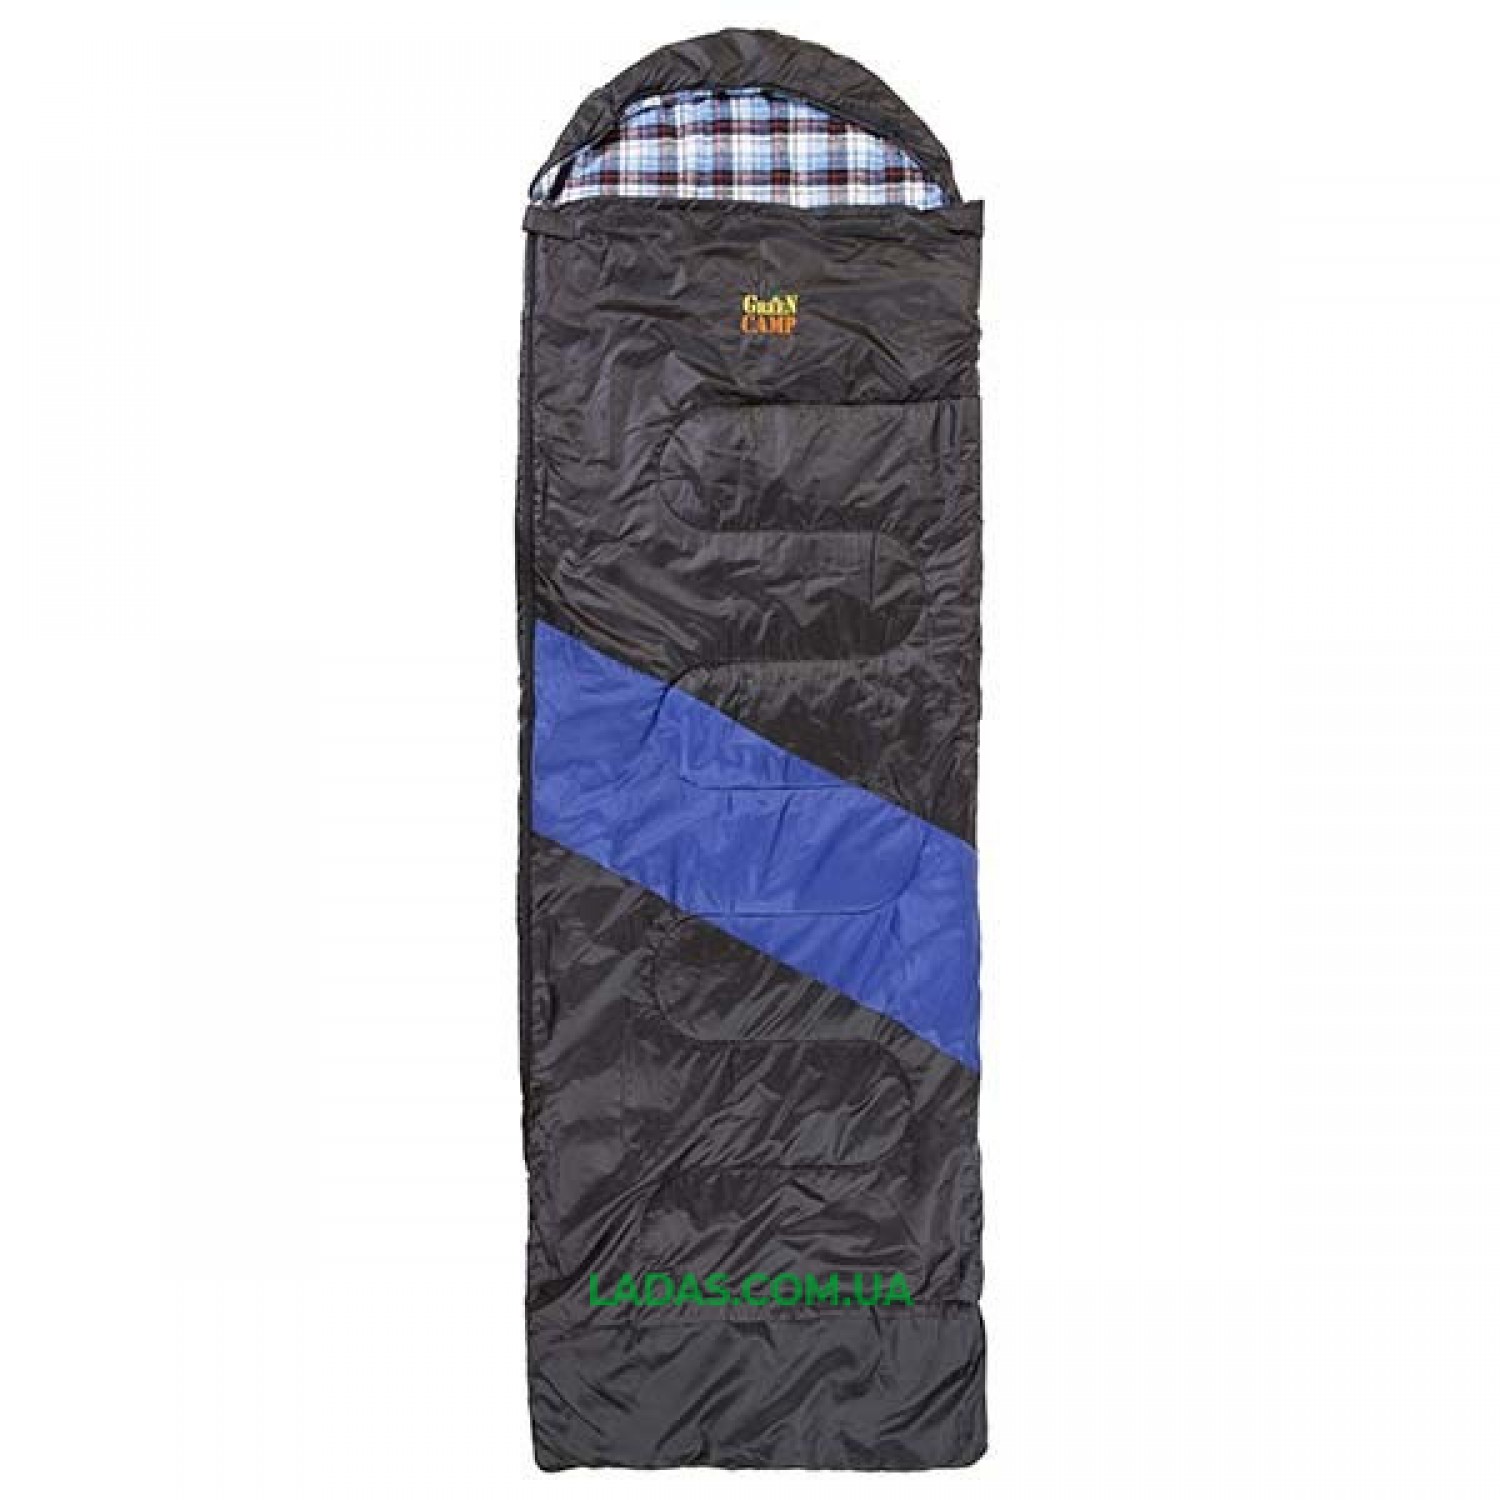 Спальник GreenCamp, одеяло, 450гр/м2, черно/голубой, подкладка Barberi, 230 х 80 см.